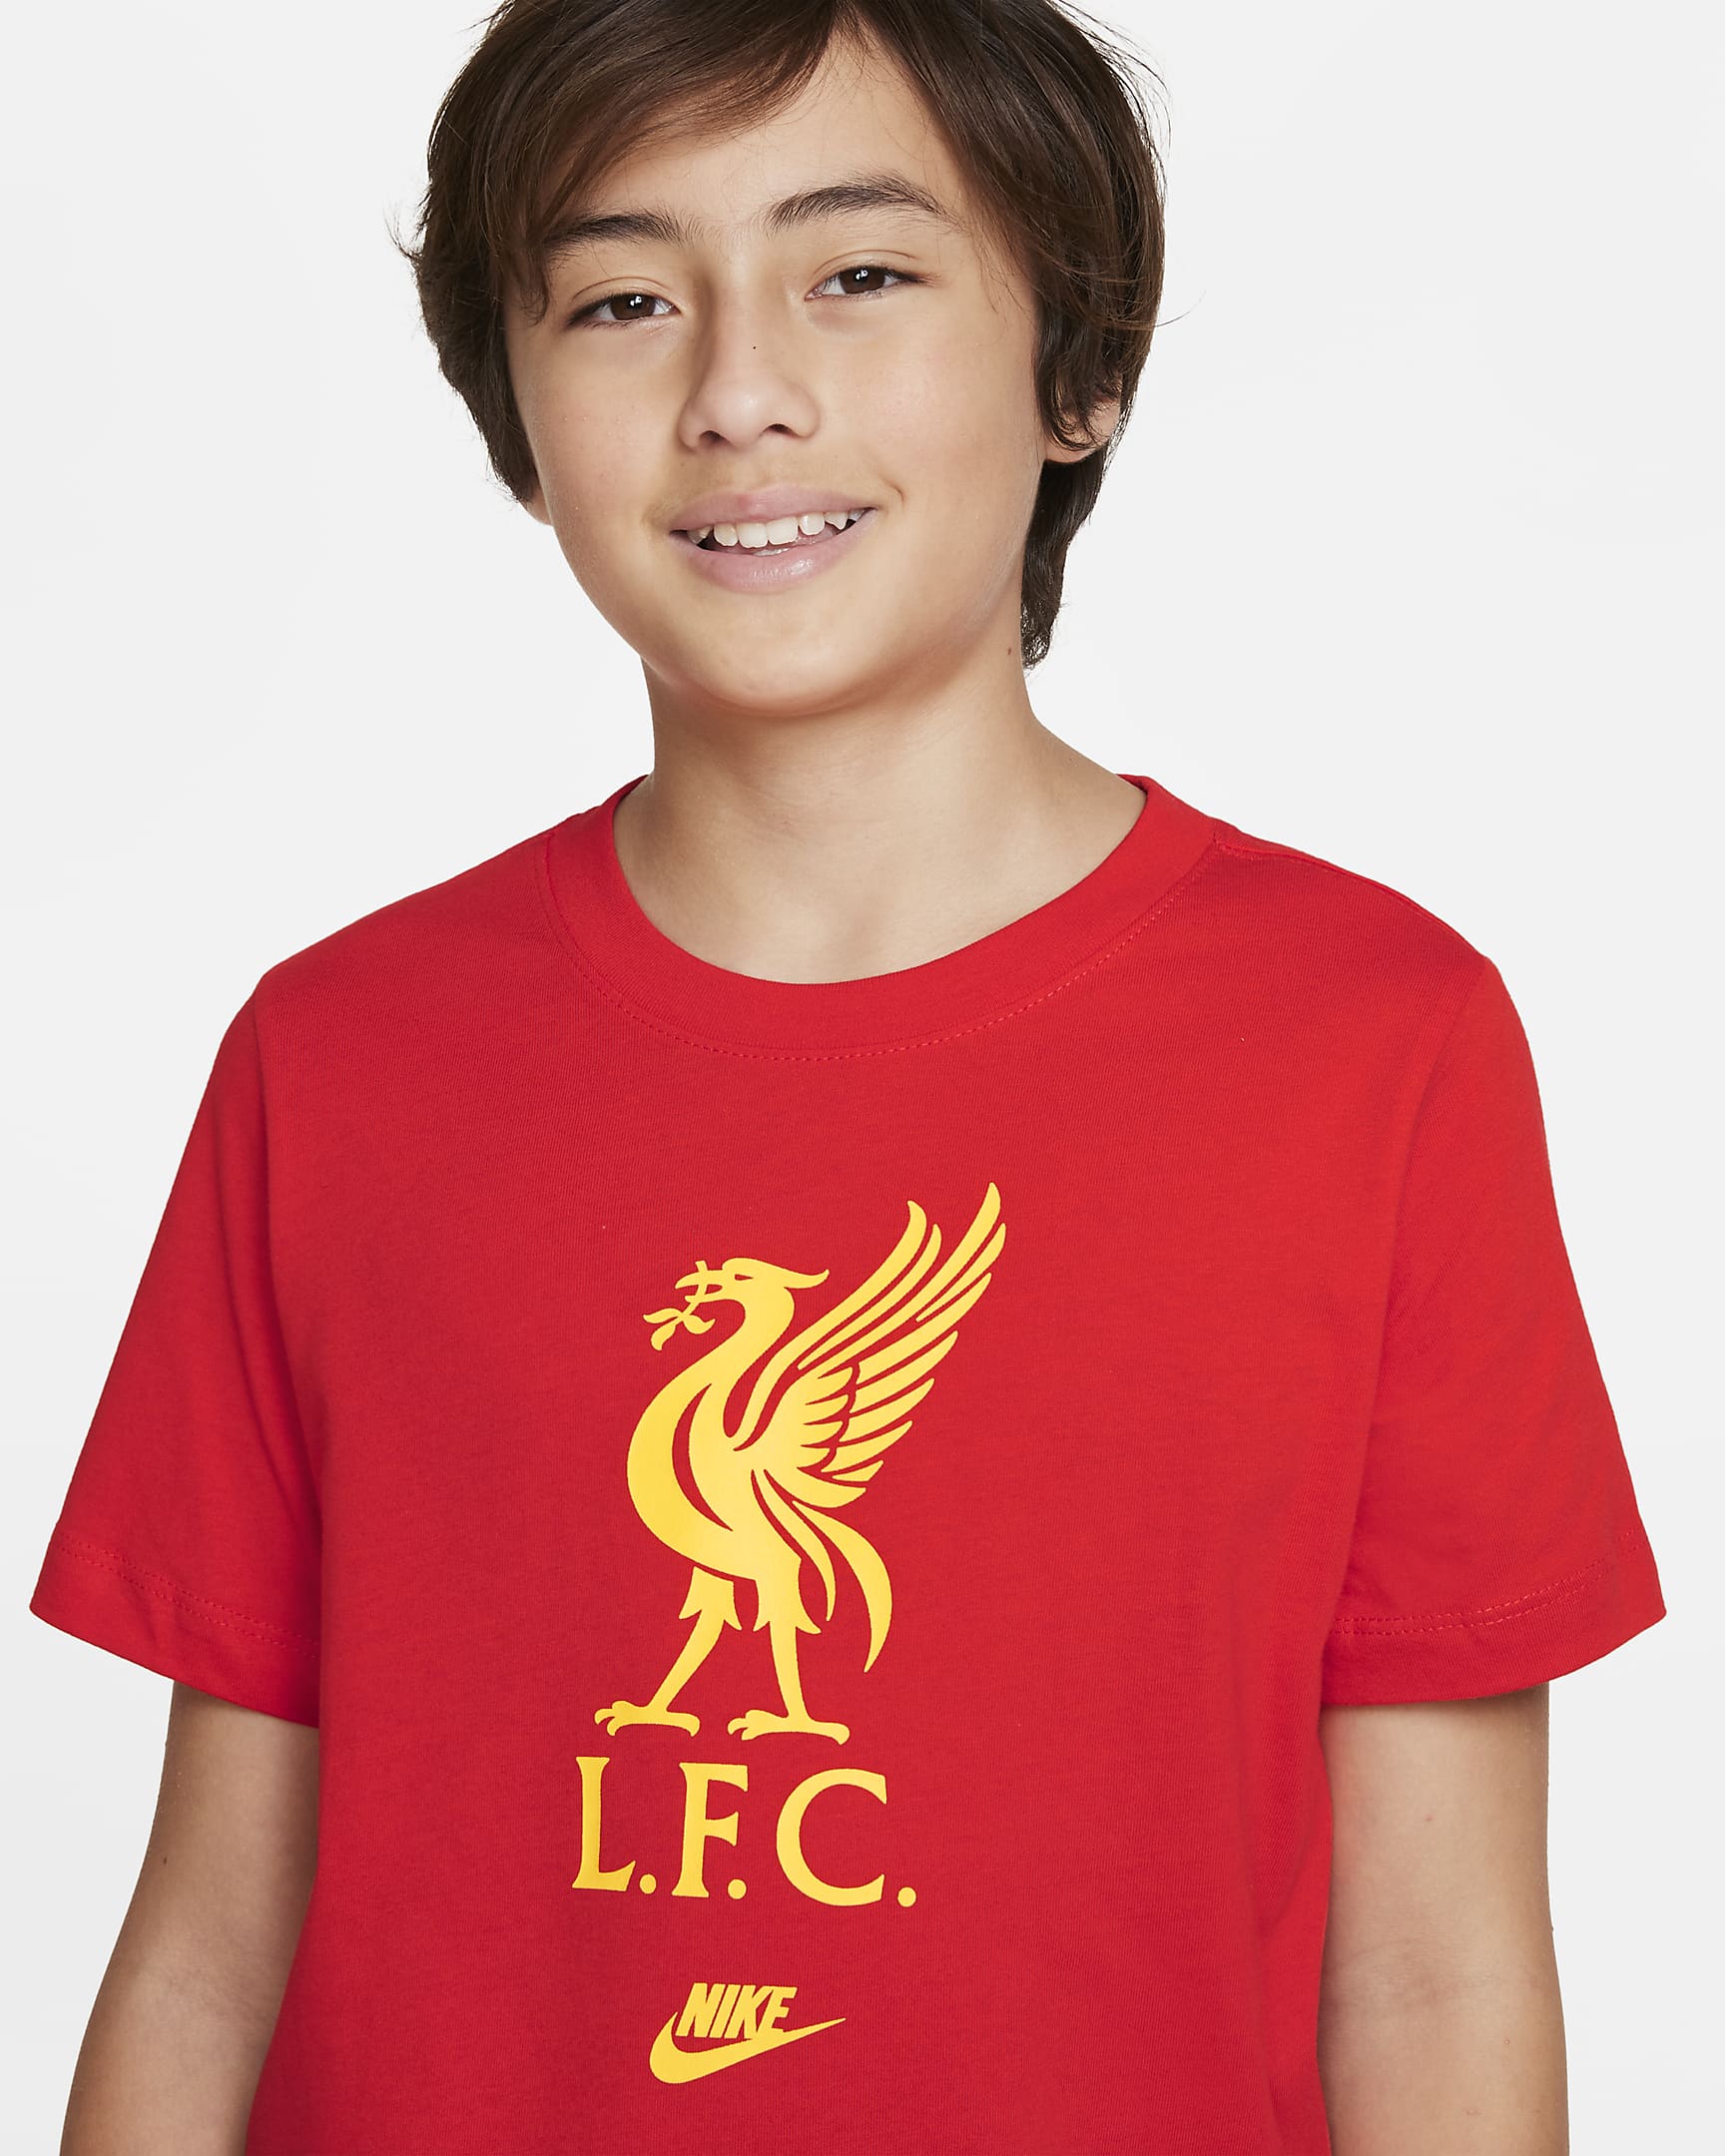 Liverpool F.C. Older Kids' T-Shirt. Nike ID